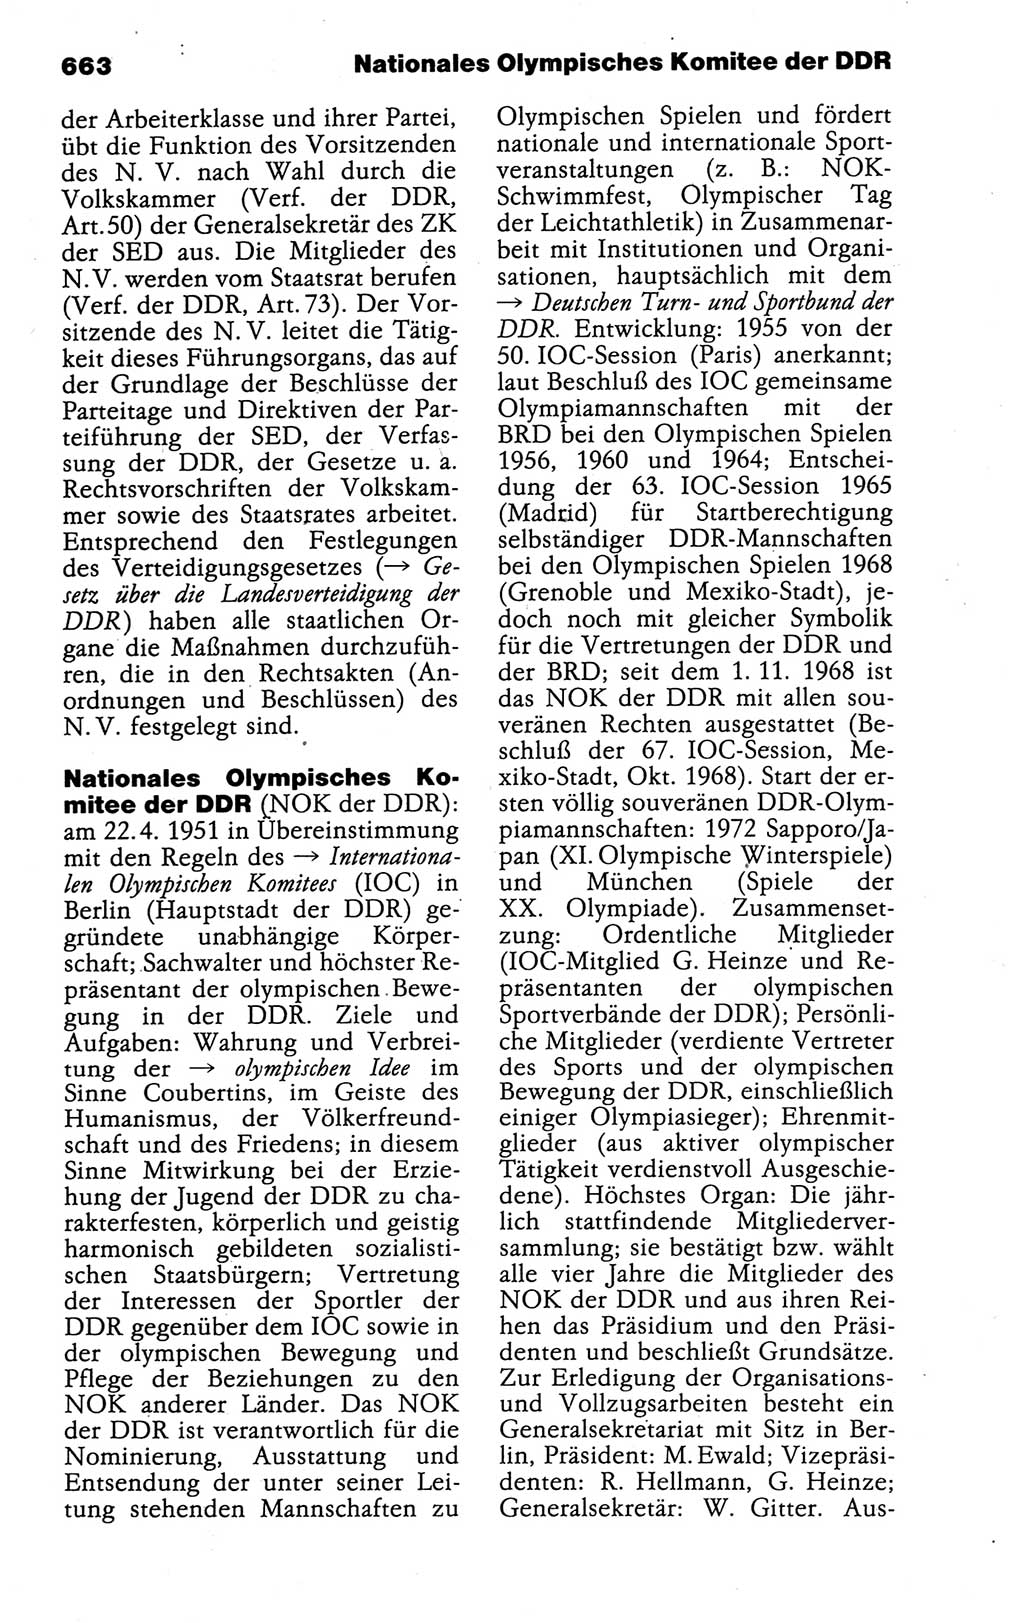 Kleines politisches Wörterbuch [Deutsche Demokratische Republik (DDR)] 1988, Seite 663 (Kl. pol. Wb. DDR 1988, S. 663)